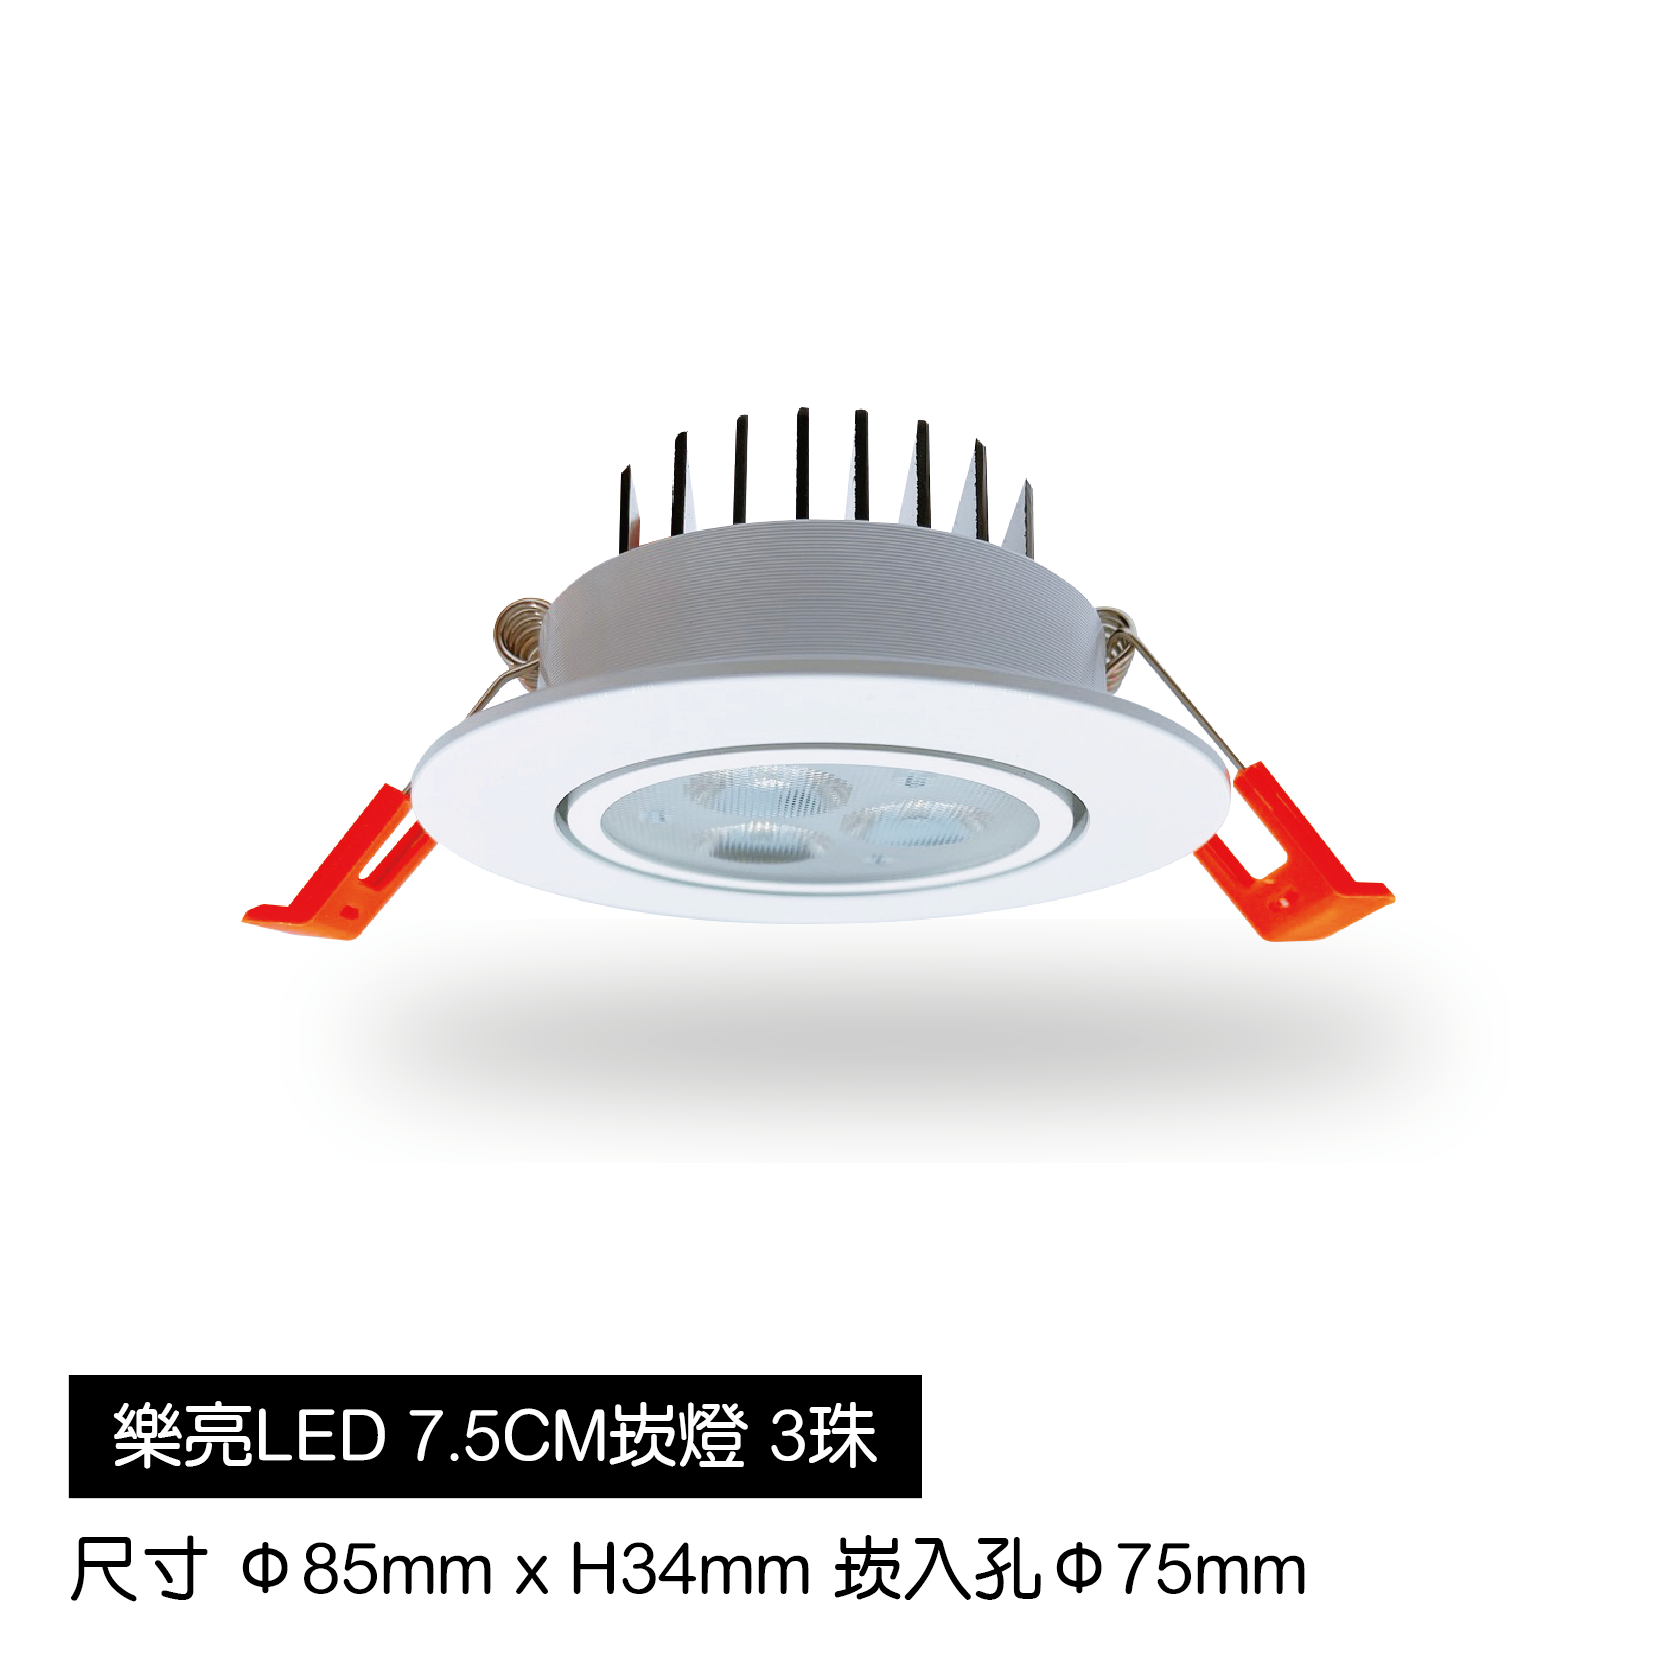 LED蜂巢7.5cm崁燈-3珠-白殼